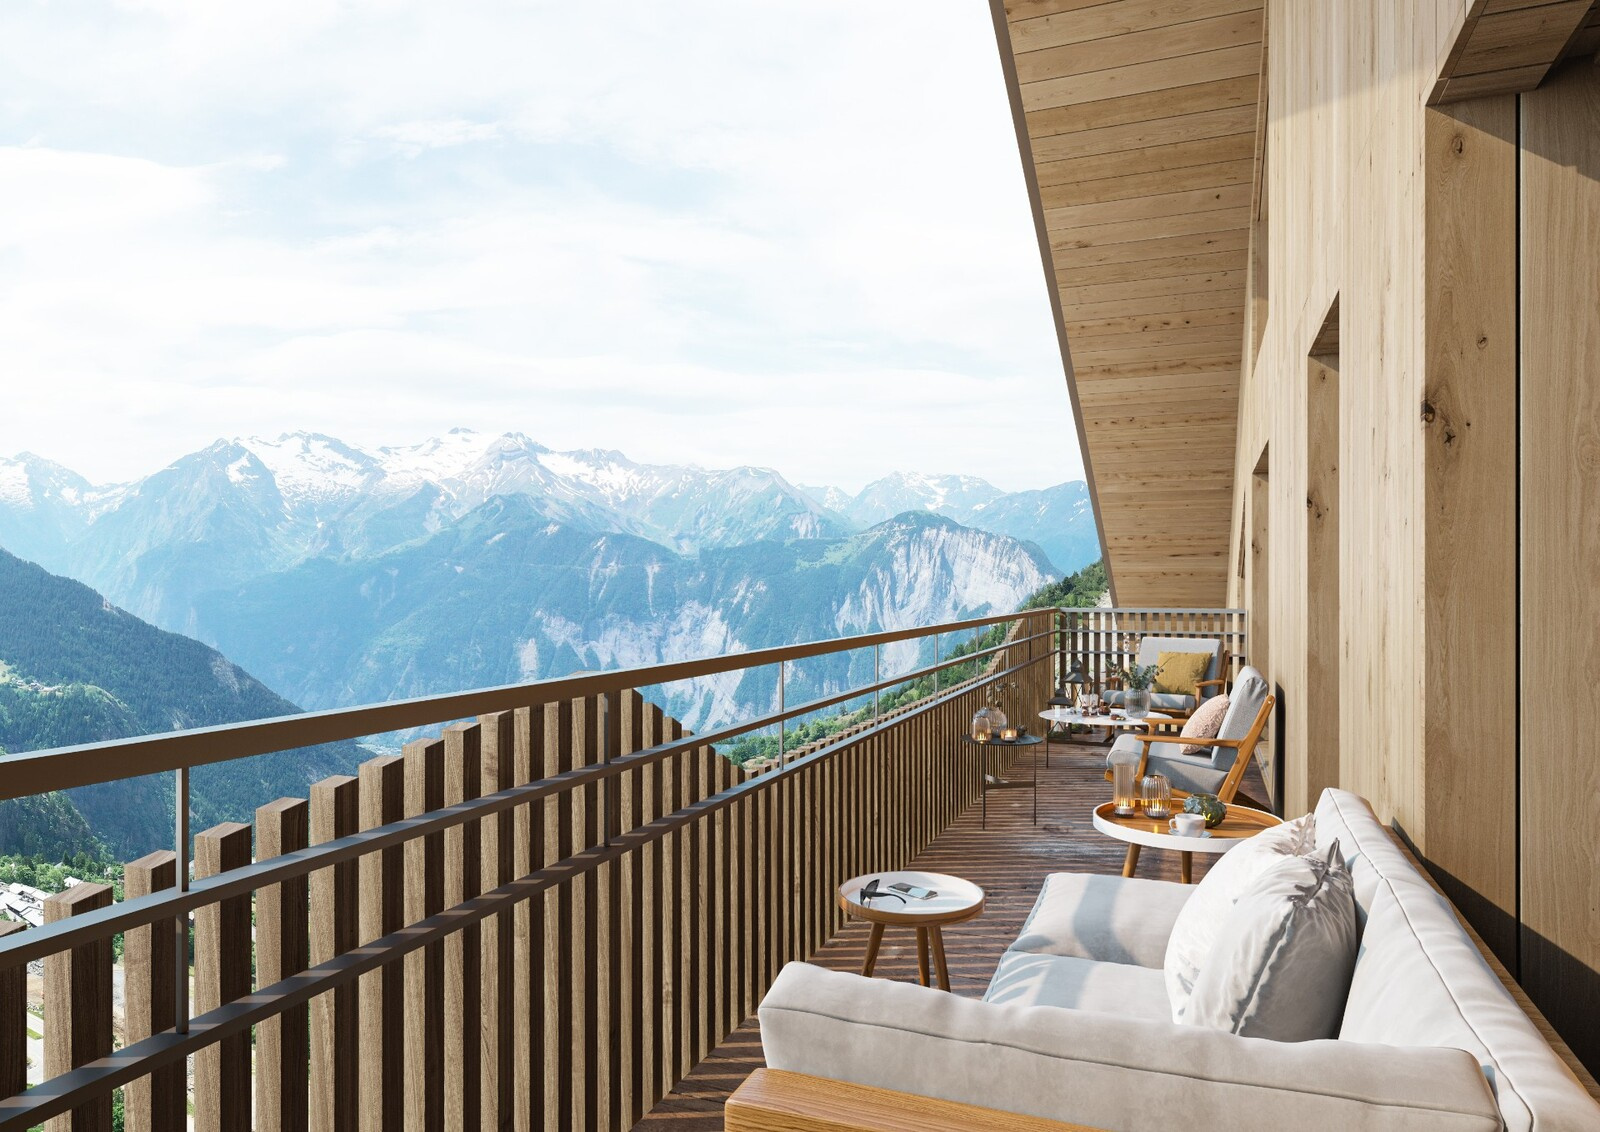 A Vendre, Appartement de 53 m2 à l'Alpe d'Huez.